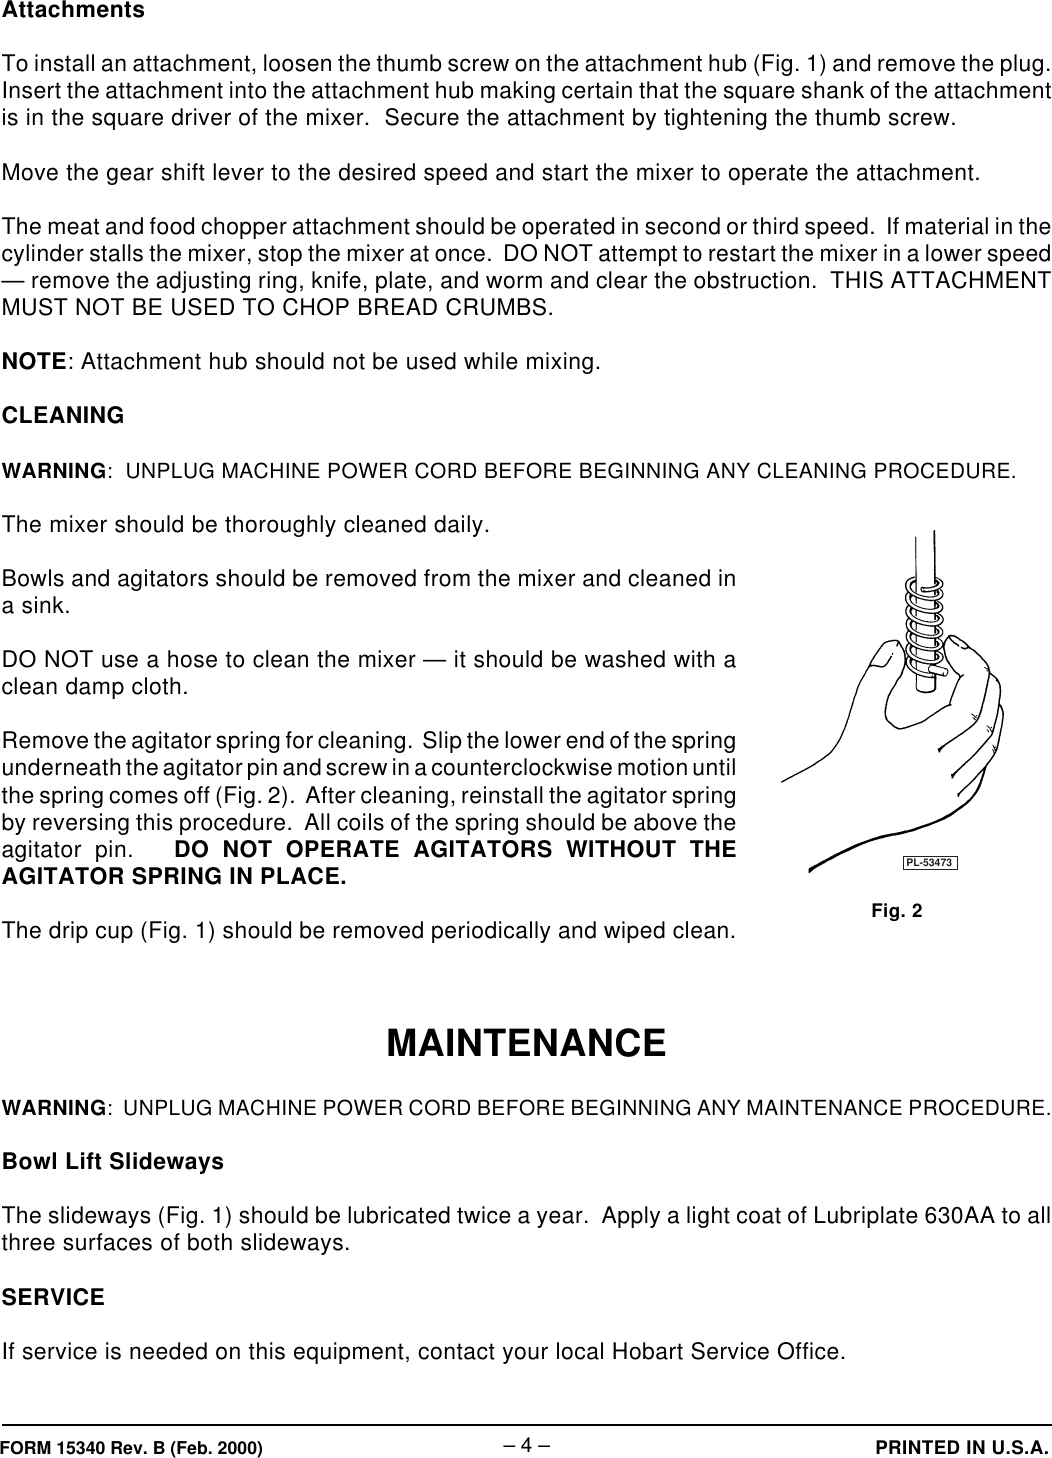 Page 4 of 4 - Hobart Hobart-N50-Ml-33777-Users-Manual- F-15340Rv.B N50 Mixer  Hobart-n50-ml-33777-users-manual